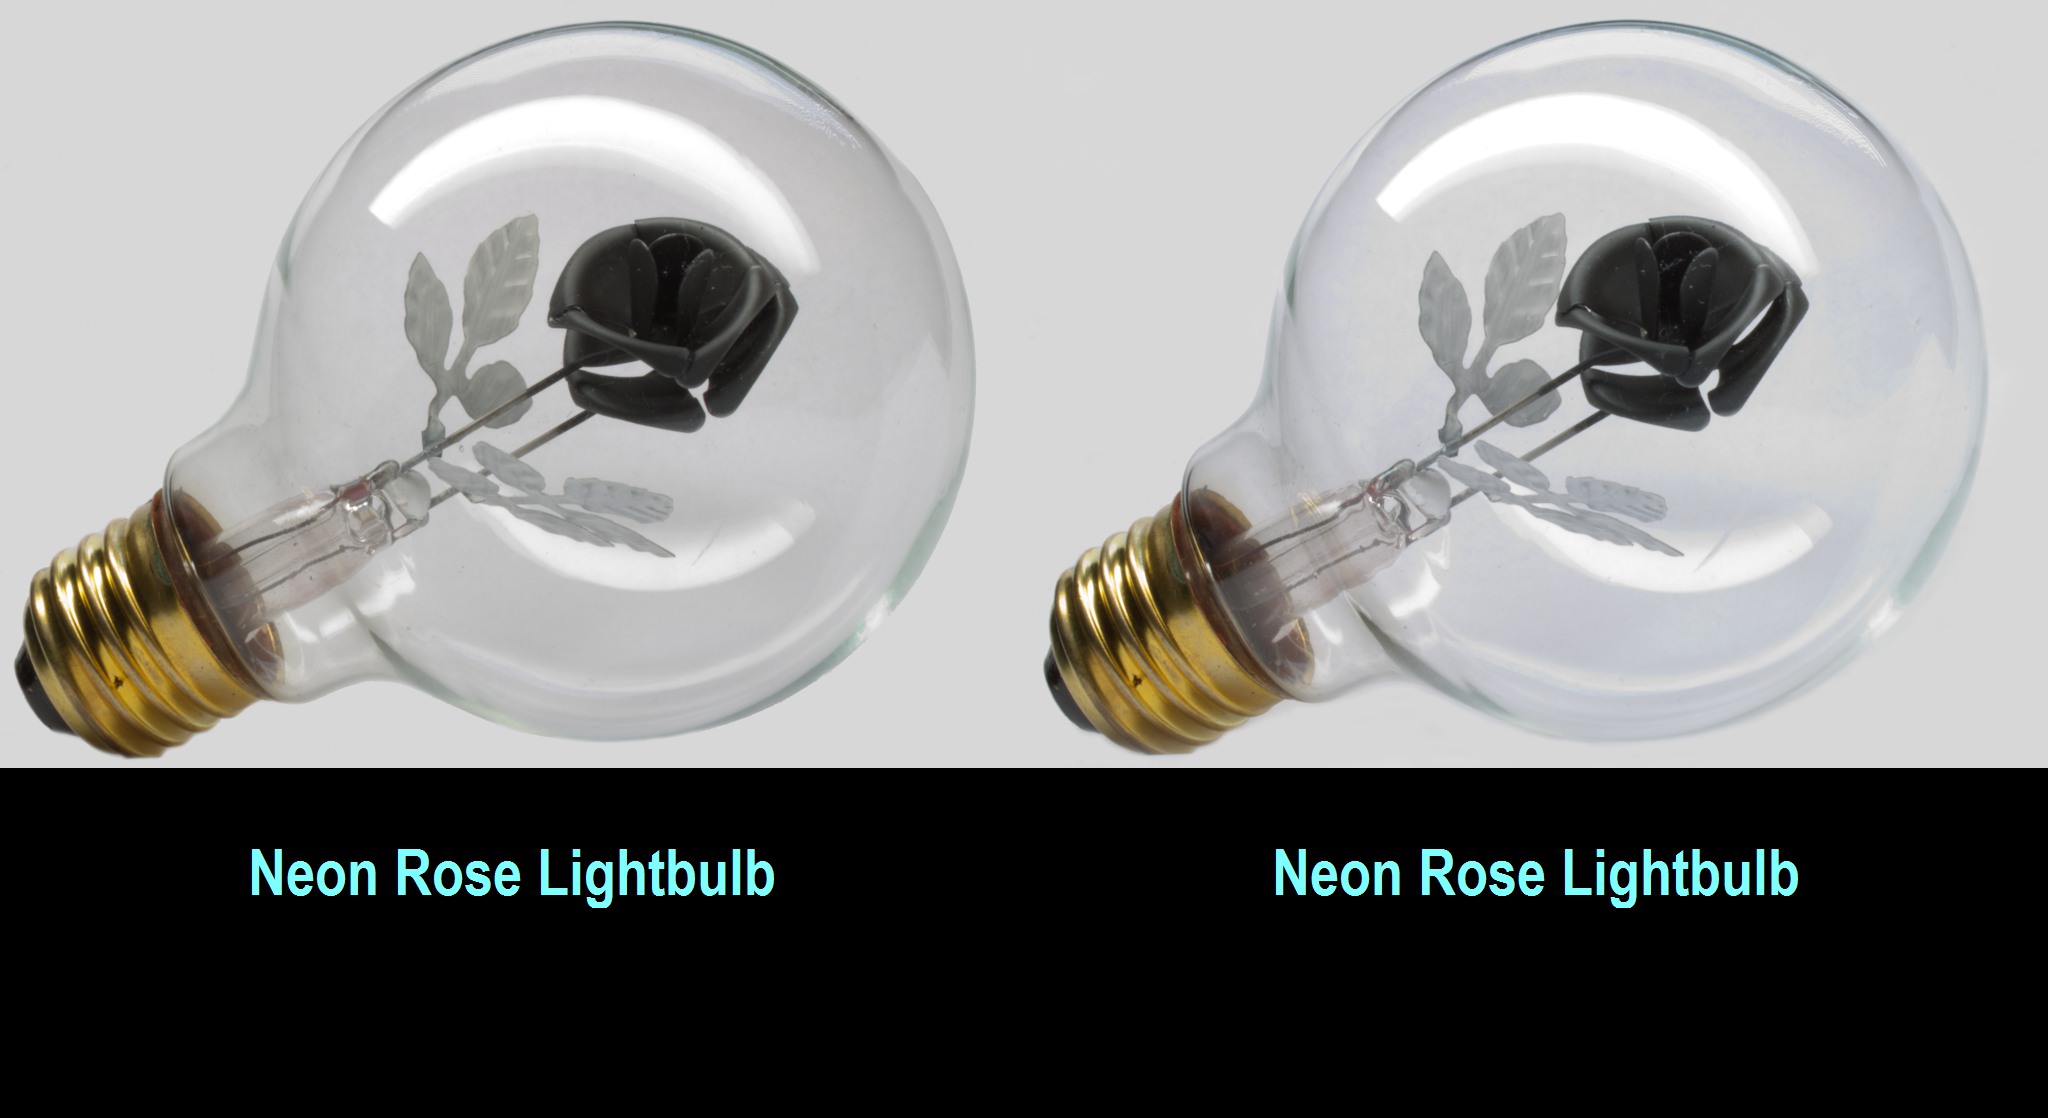 Neon Rose lightbulb